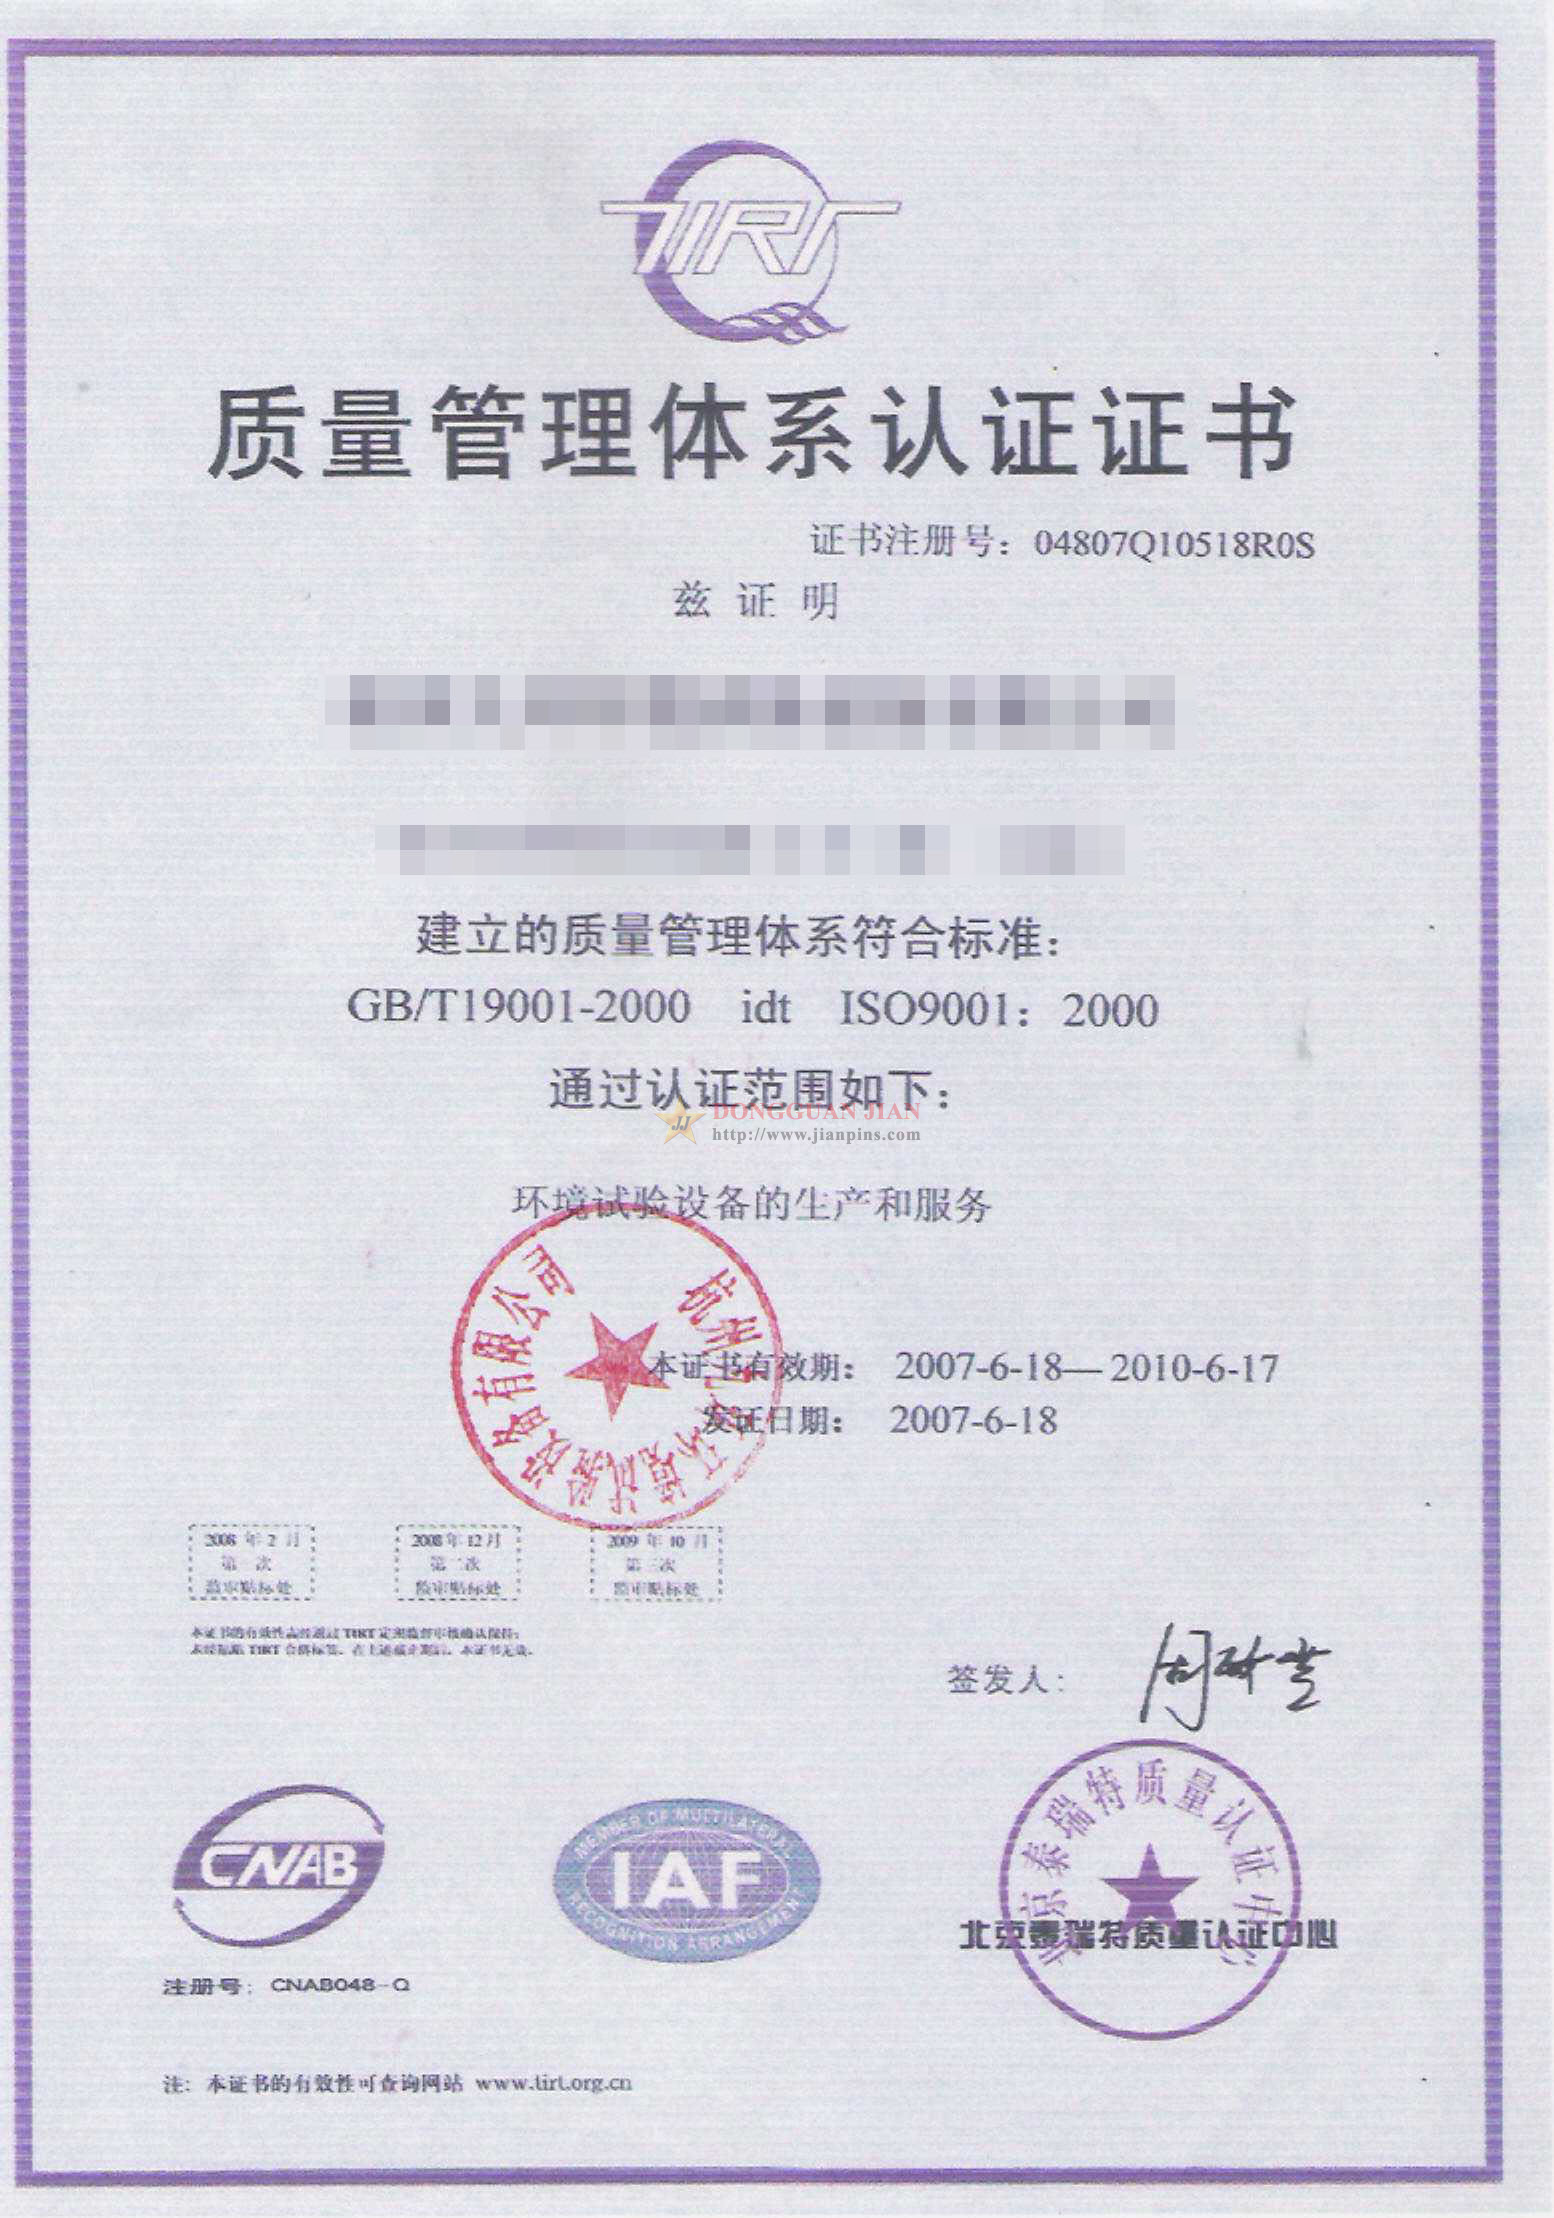 Certificaten3